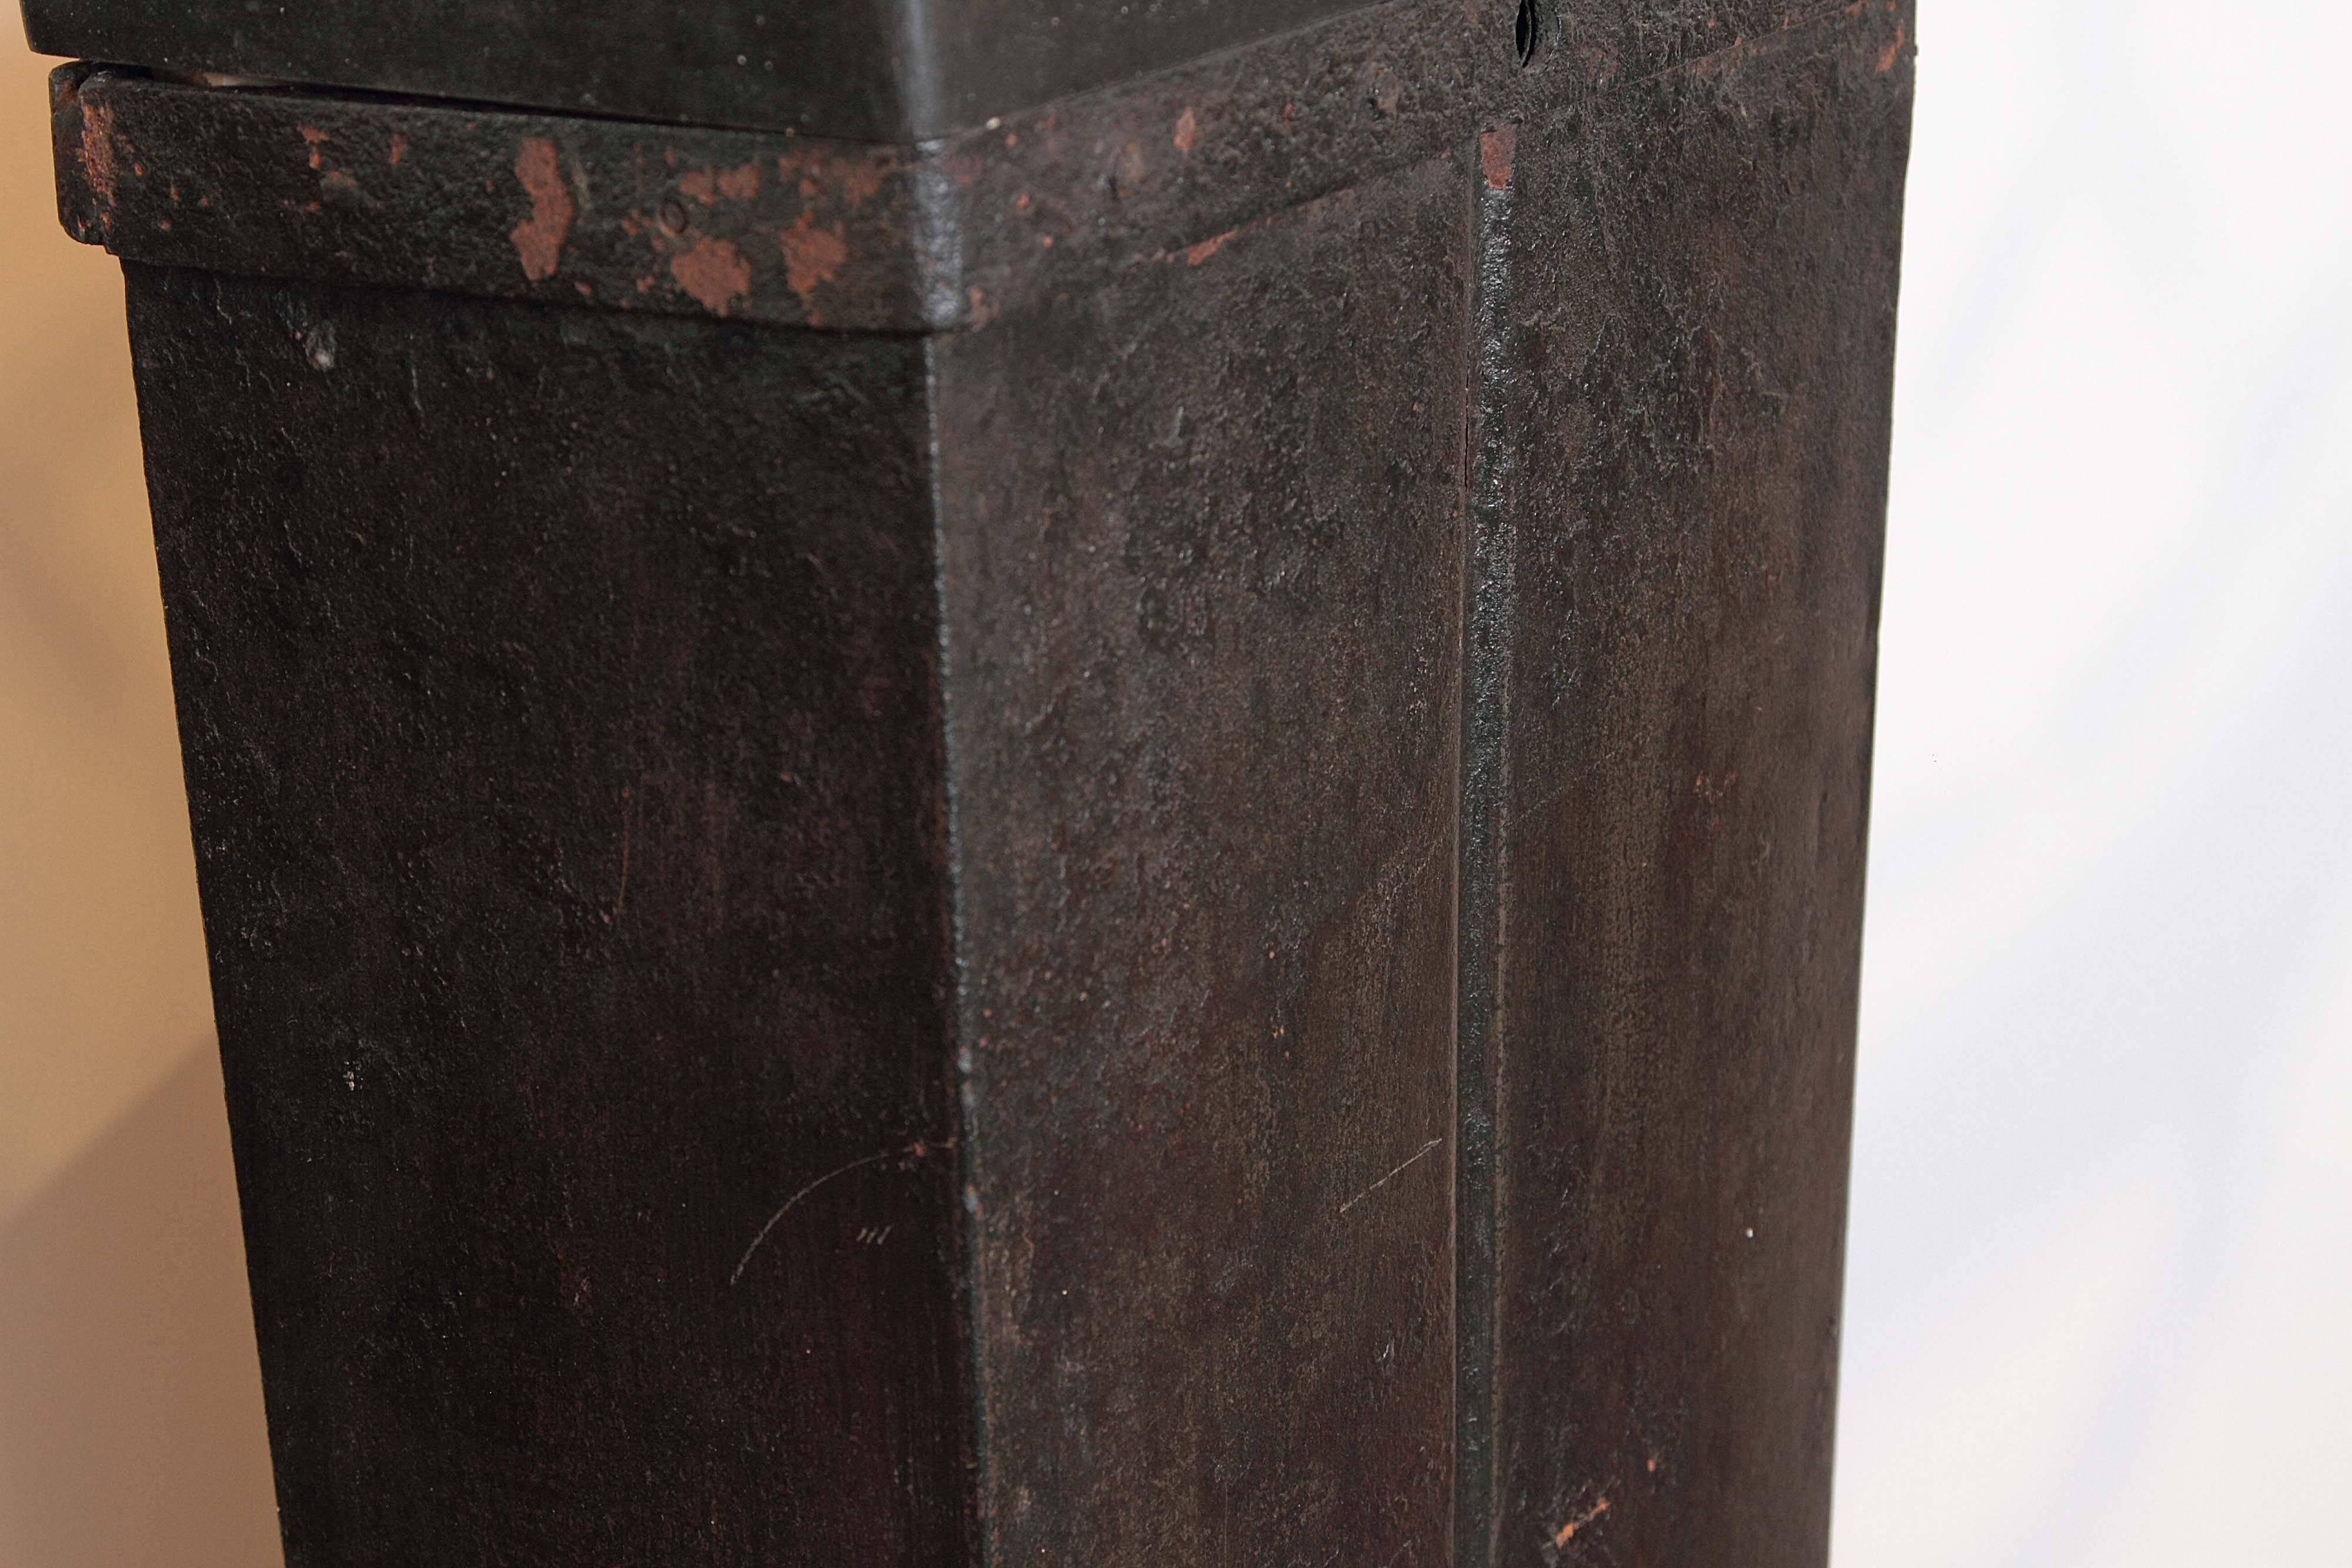 Industrial Black Display Pedestal Table, 41.5